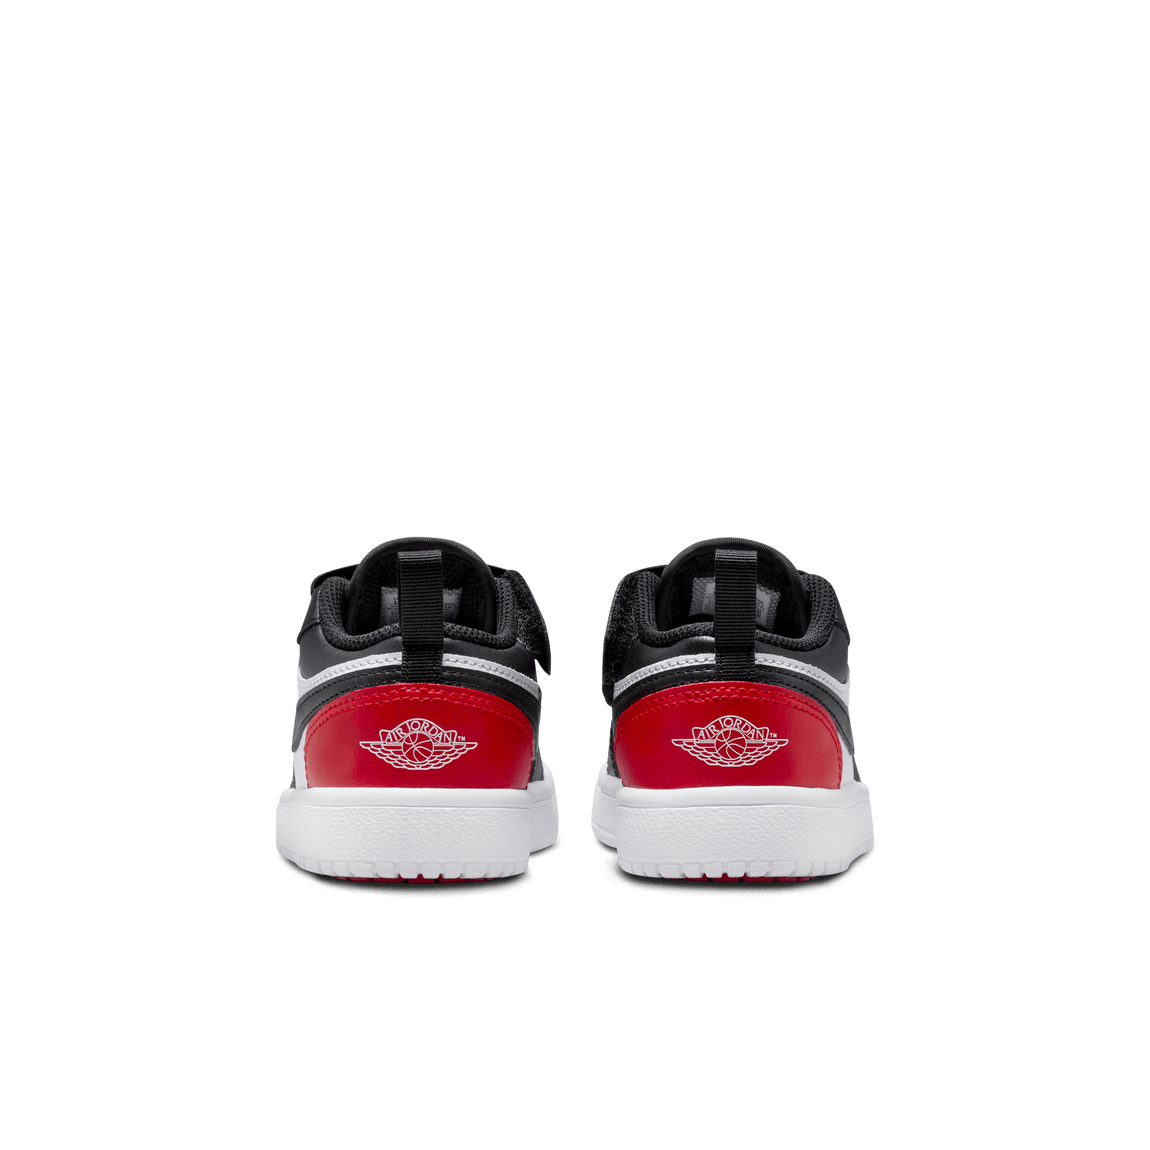 Air Jordan 1 Low ALT PS (White/Black-Varsity Red-White) - Air Jordan 1 Low ALT PS (White/Black-Varsity Red-White) - 